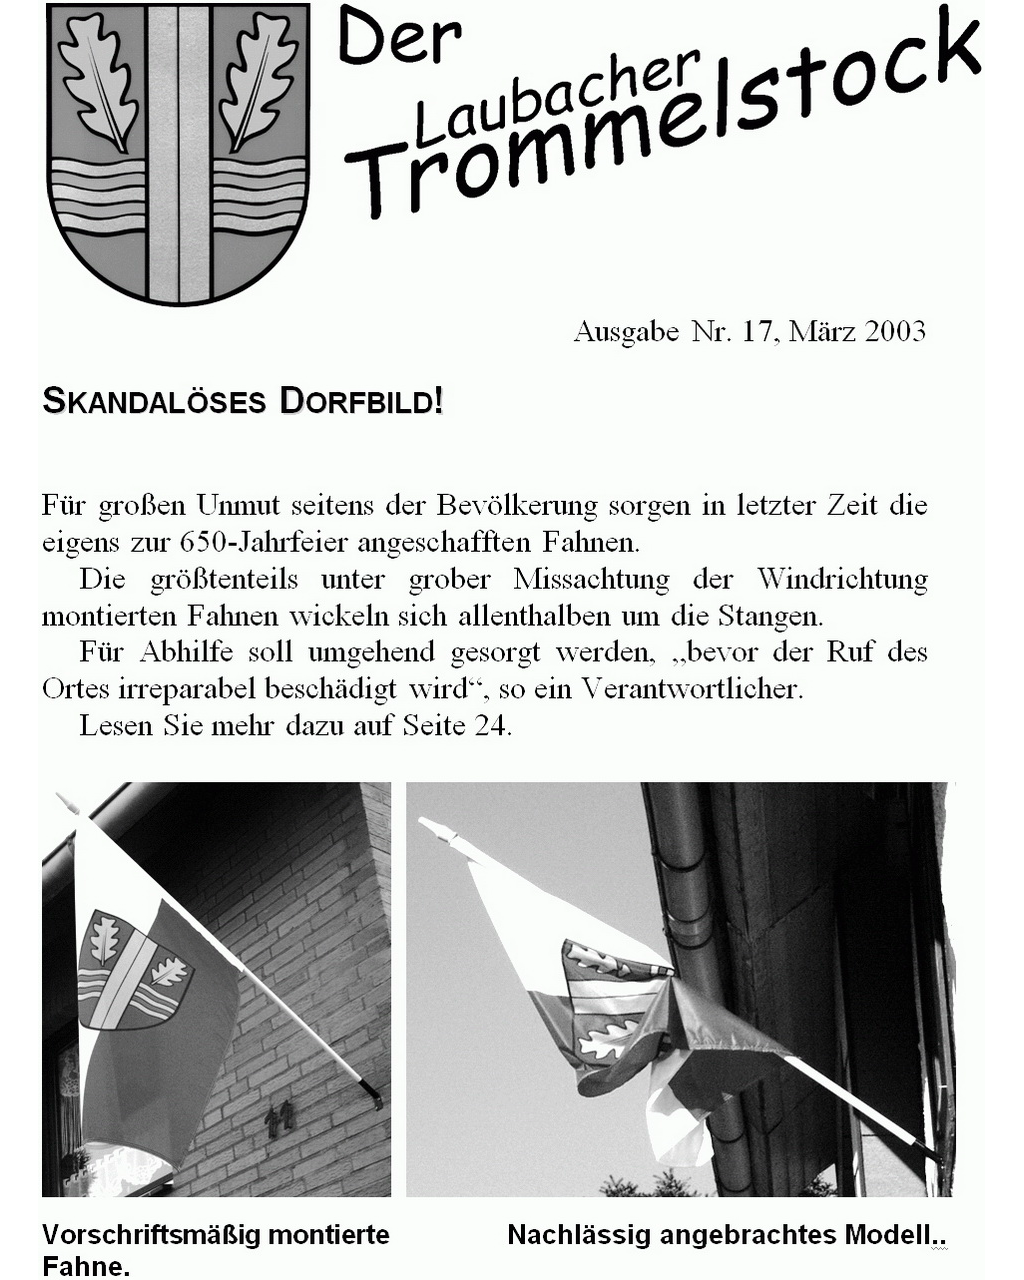 Laubacher-Trommelstock-Titelseite-017b